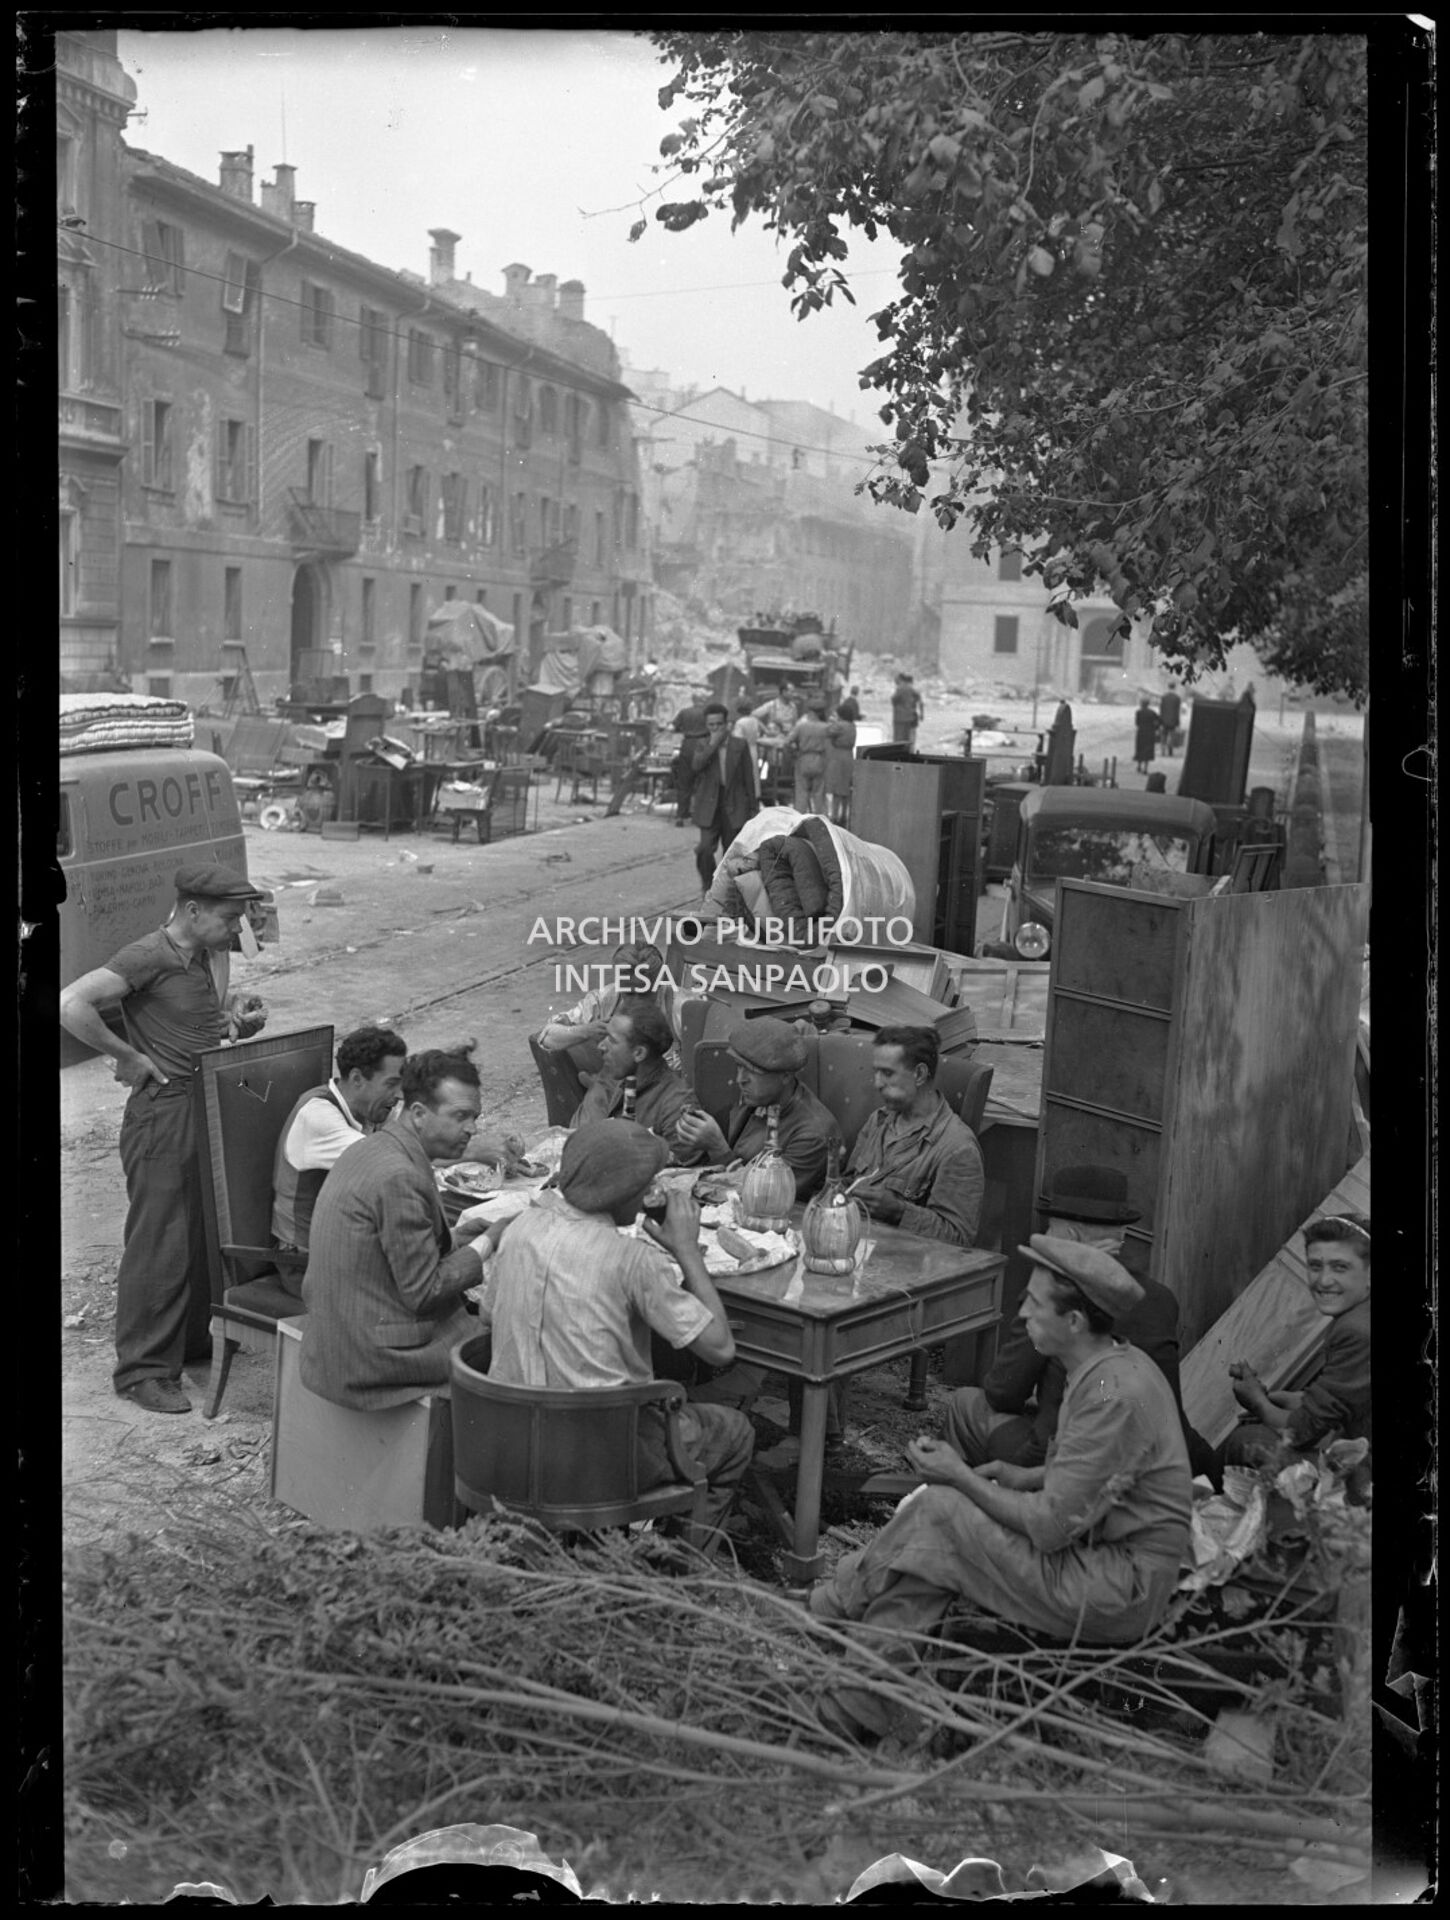 Un gruppo di uomini pranza in piazza sant'Ambrogio, a Milano, su un tavolo apparecchiato alla bell'e meglio, tra masserizie recuperate dalle case bombardate